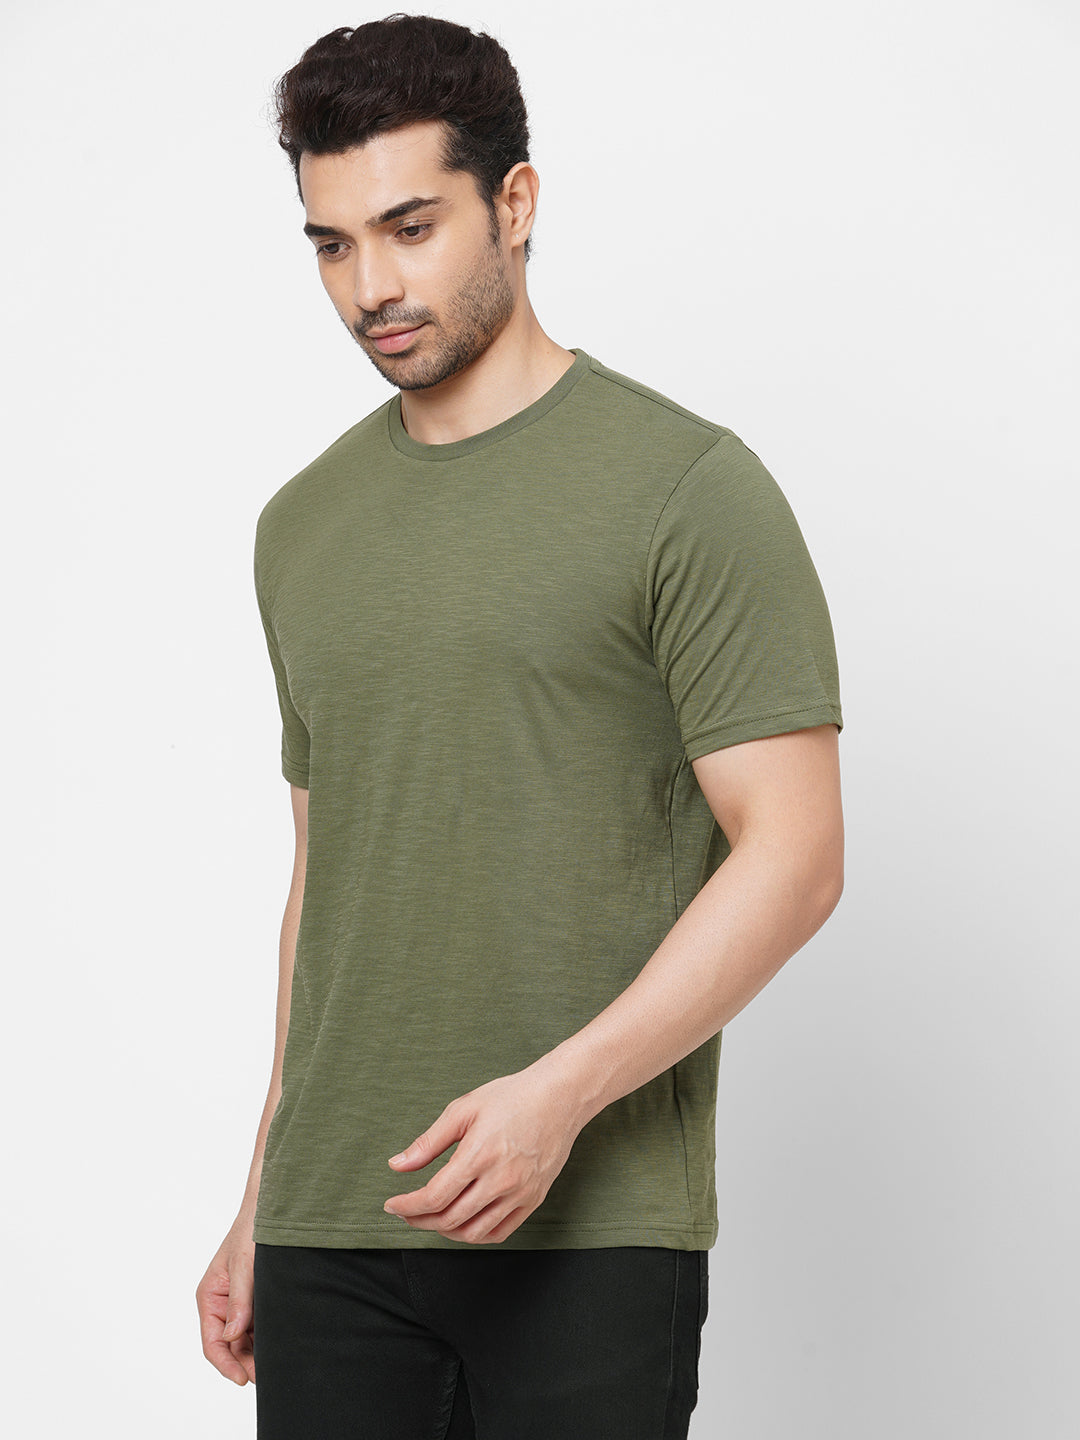 Men's Cotton Olive Regular Fit Tshirt